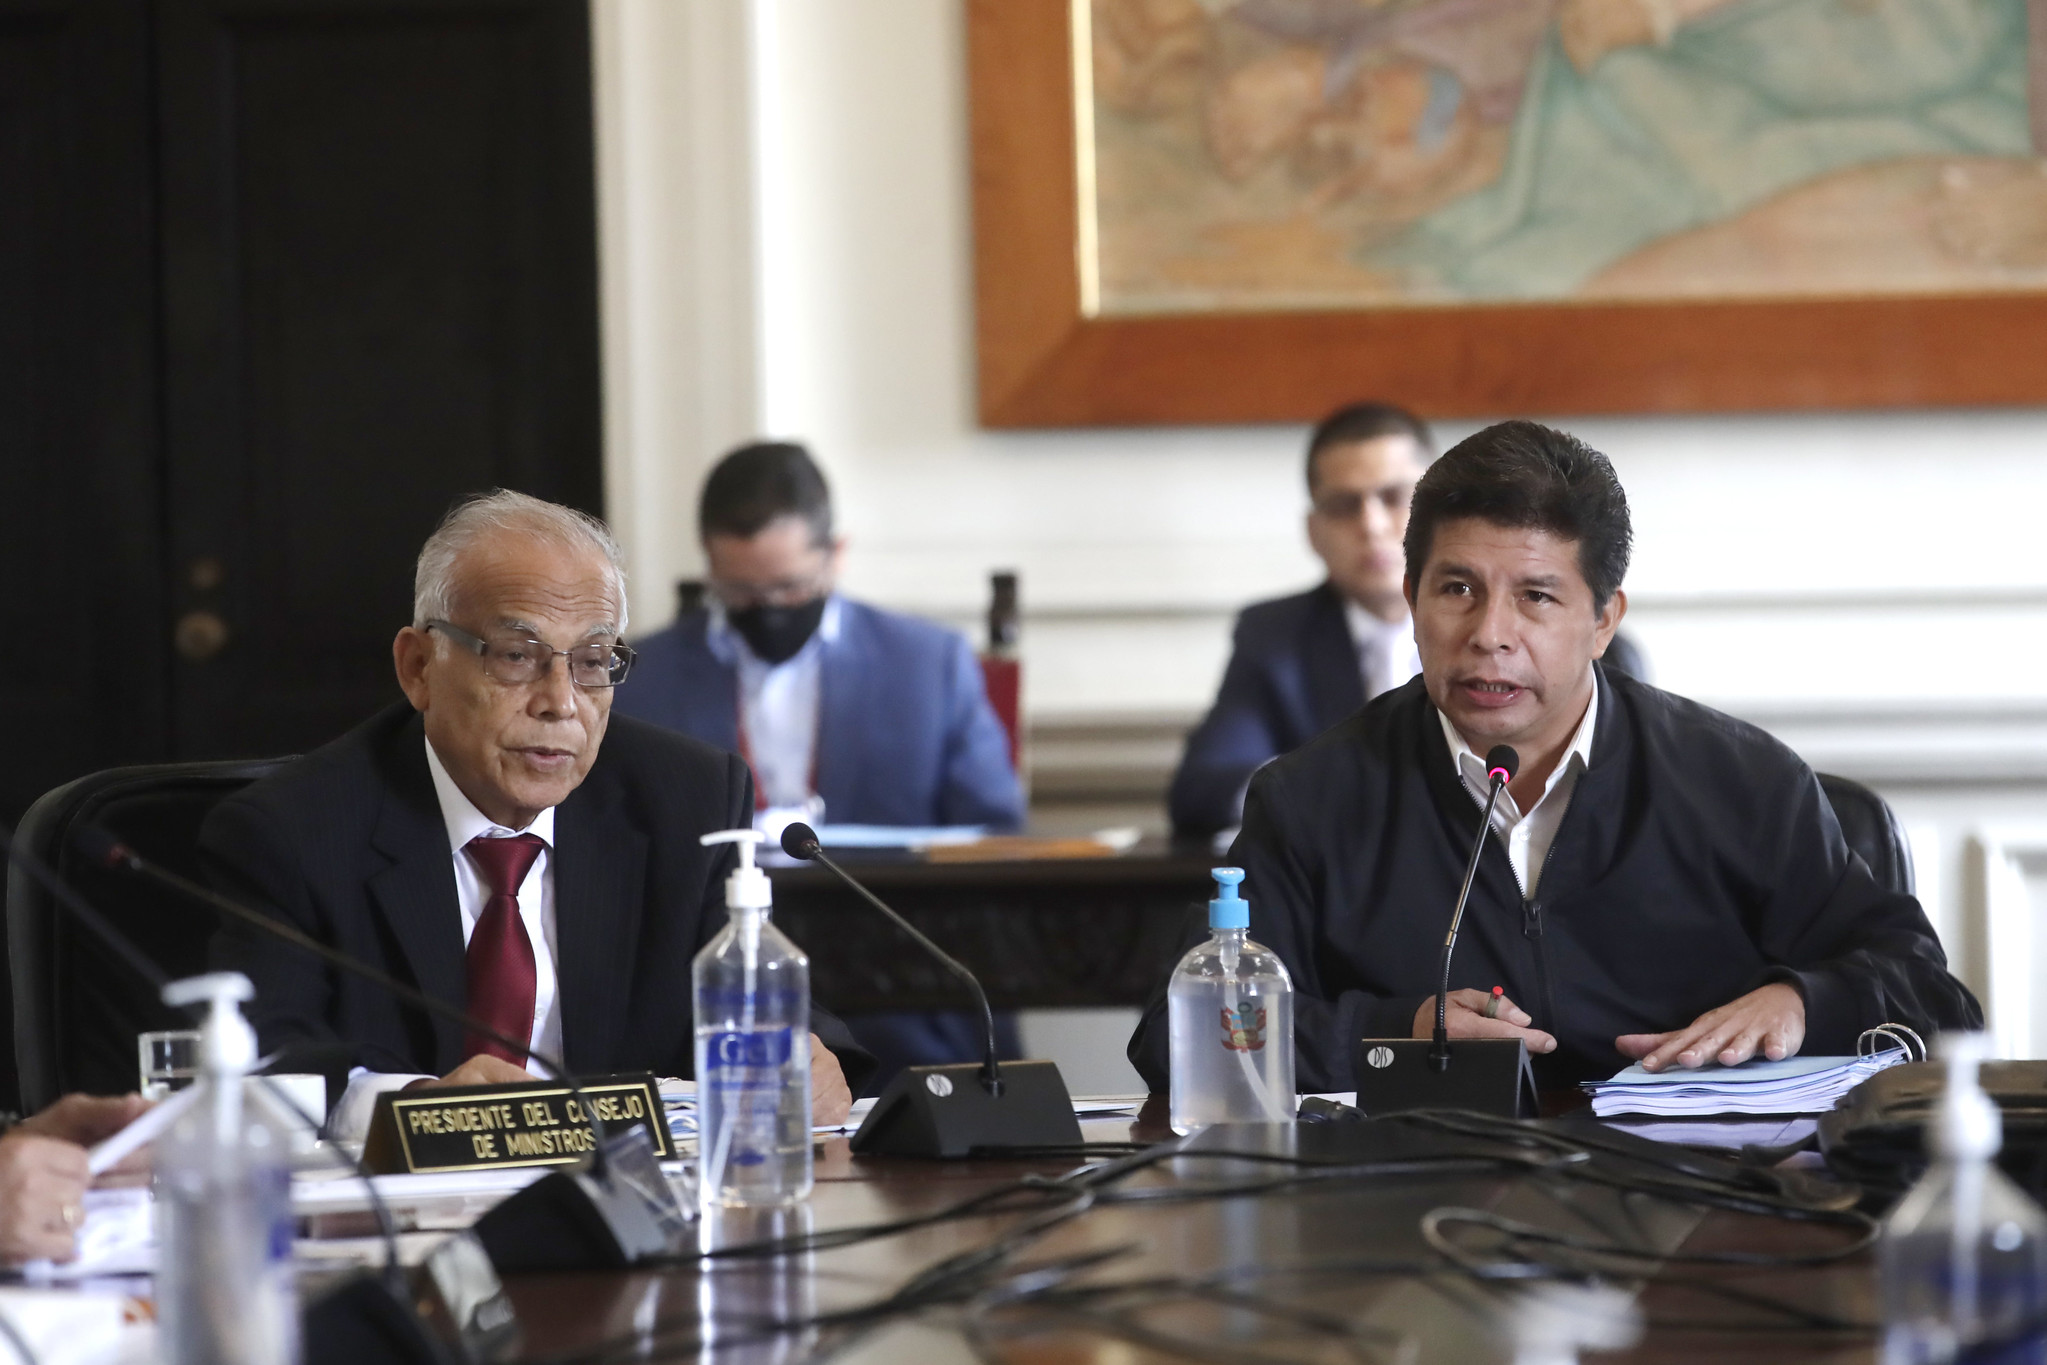 PERÚ: Caso Las Bambas: presidente Castillo reafirma su respaldo a la inversión privada responsable que respete el medio ambiente y las comunidades